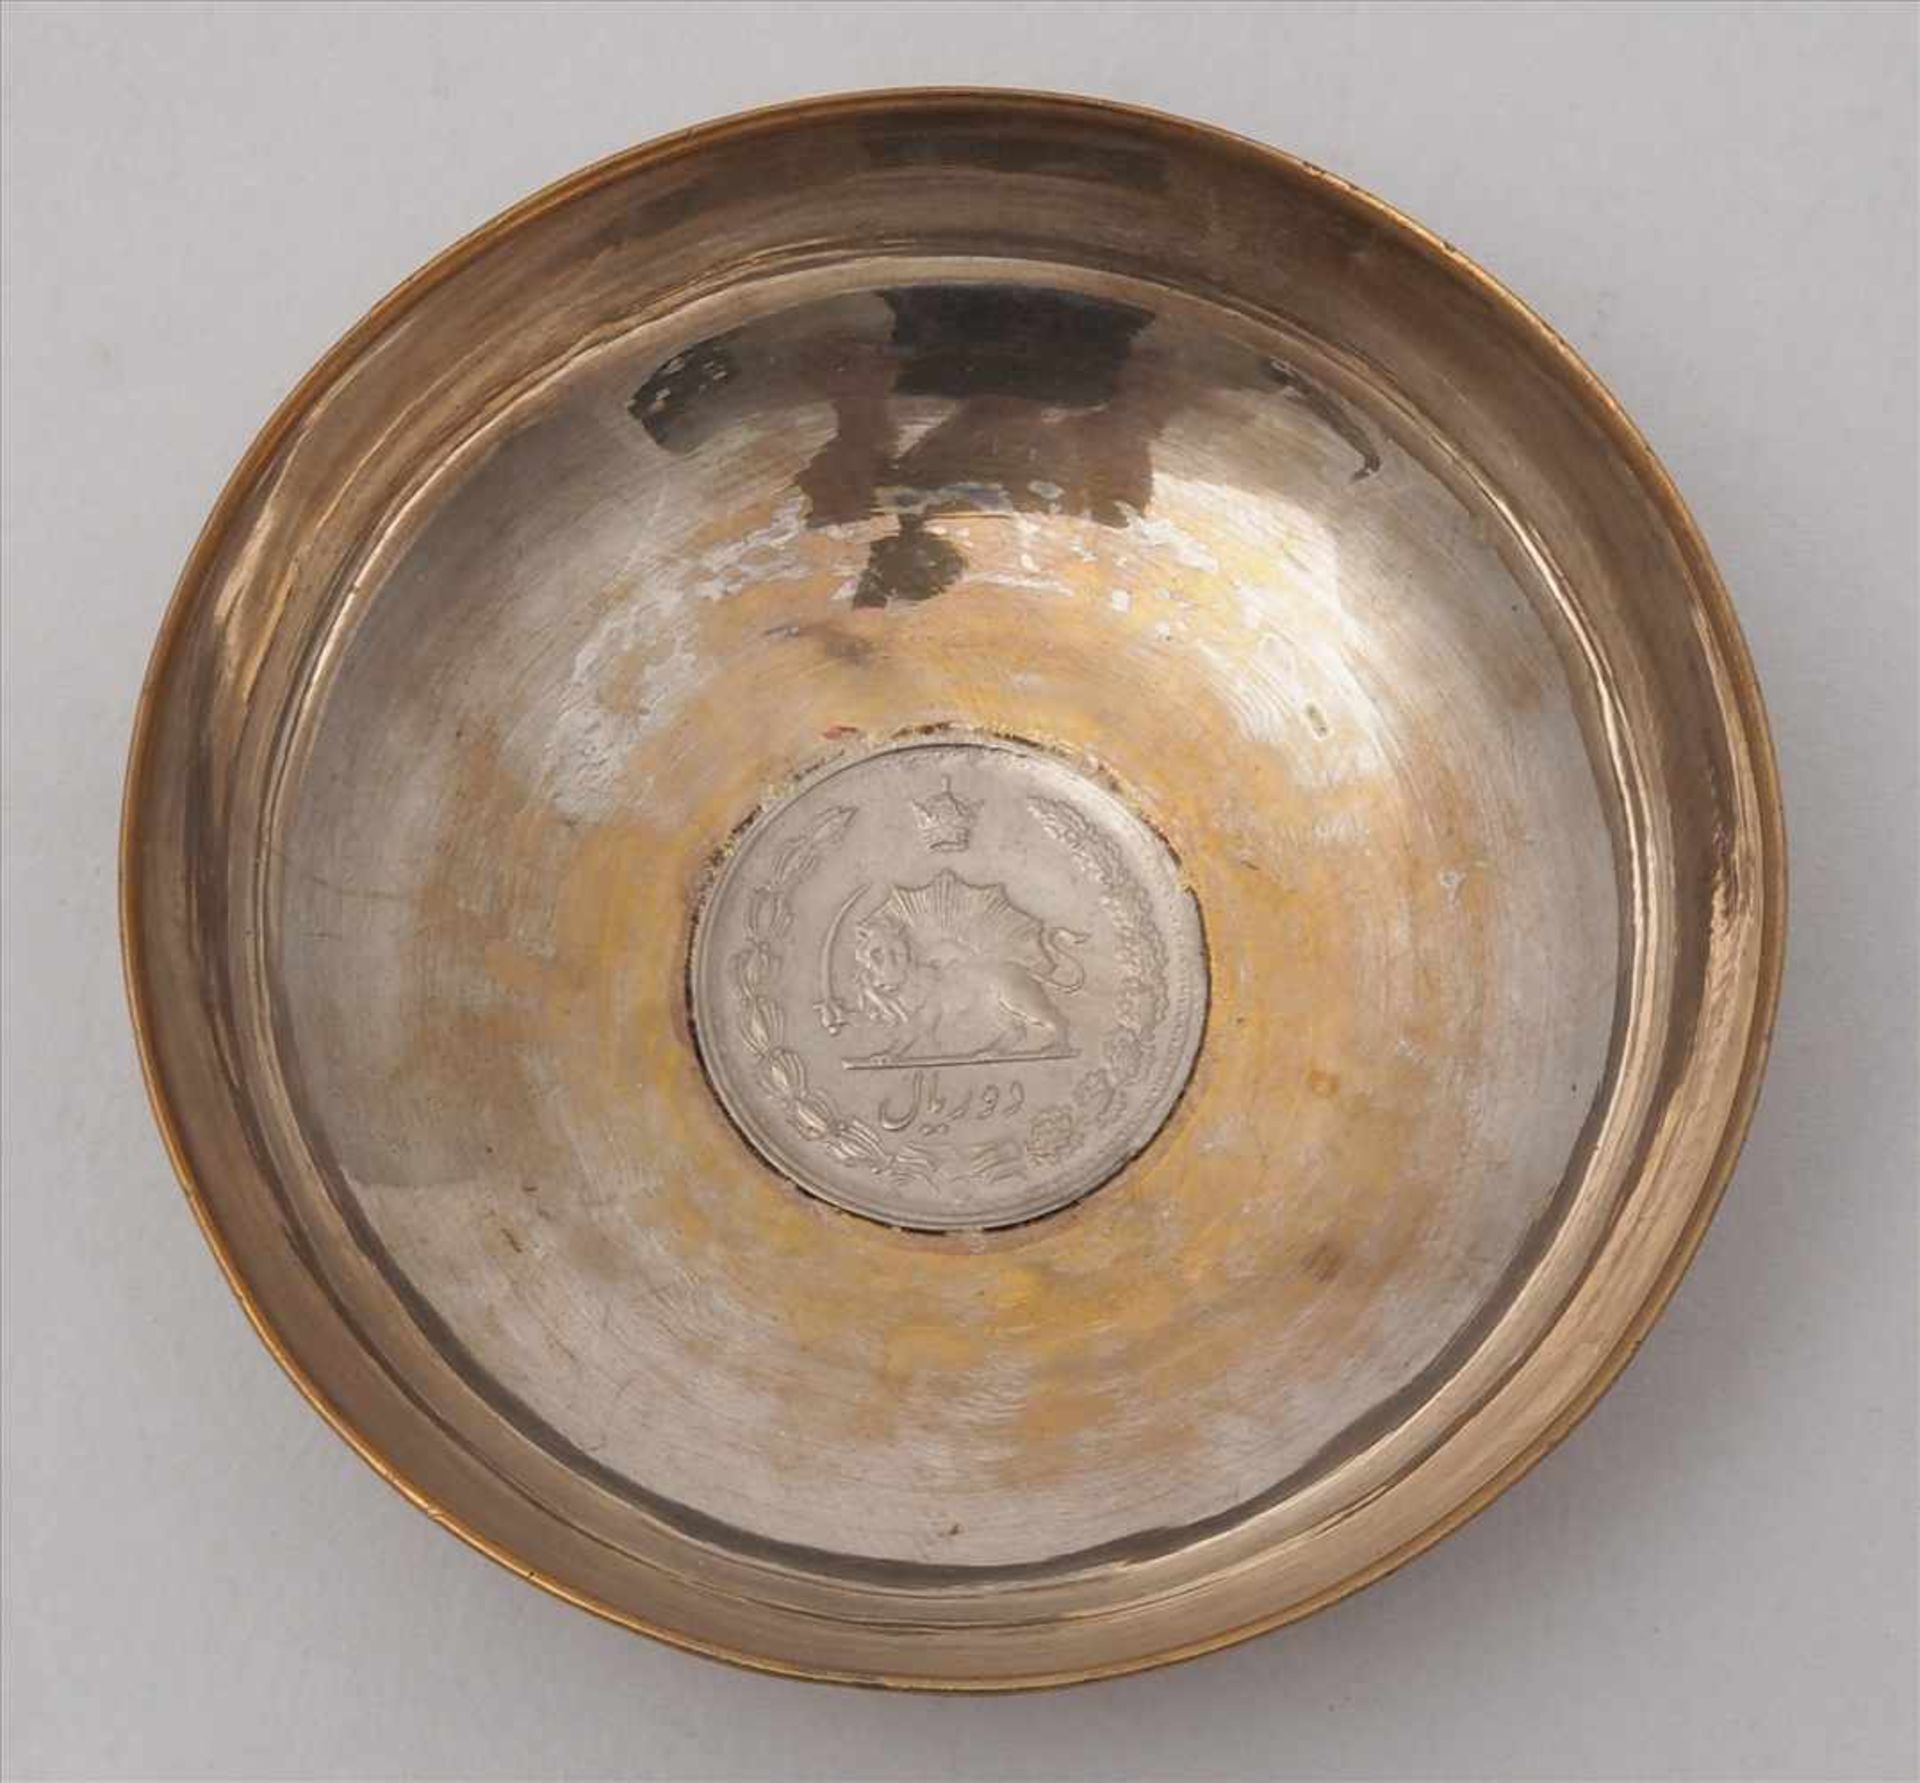 MünzschälchenNaher Osten 20. Jh. Silber, nicht punziert. Eingearbeitete Münze. Durchmesser ca. 6 cm, - Bild 2 aus 3